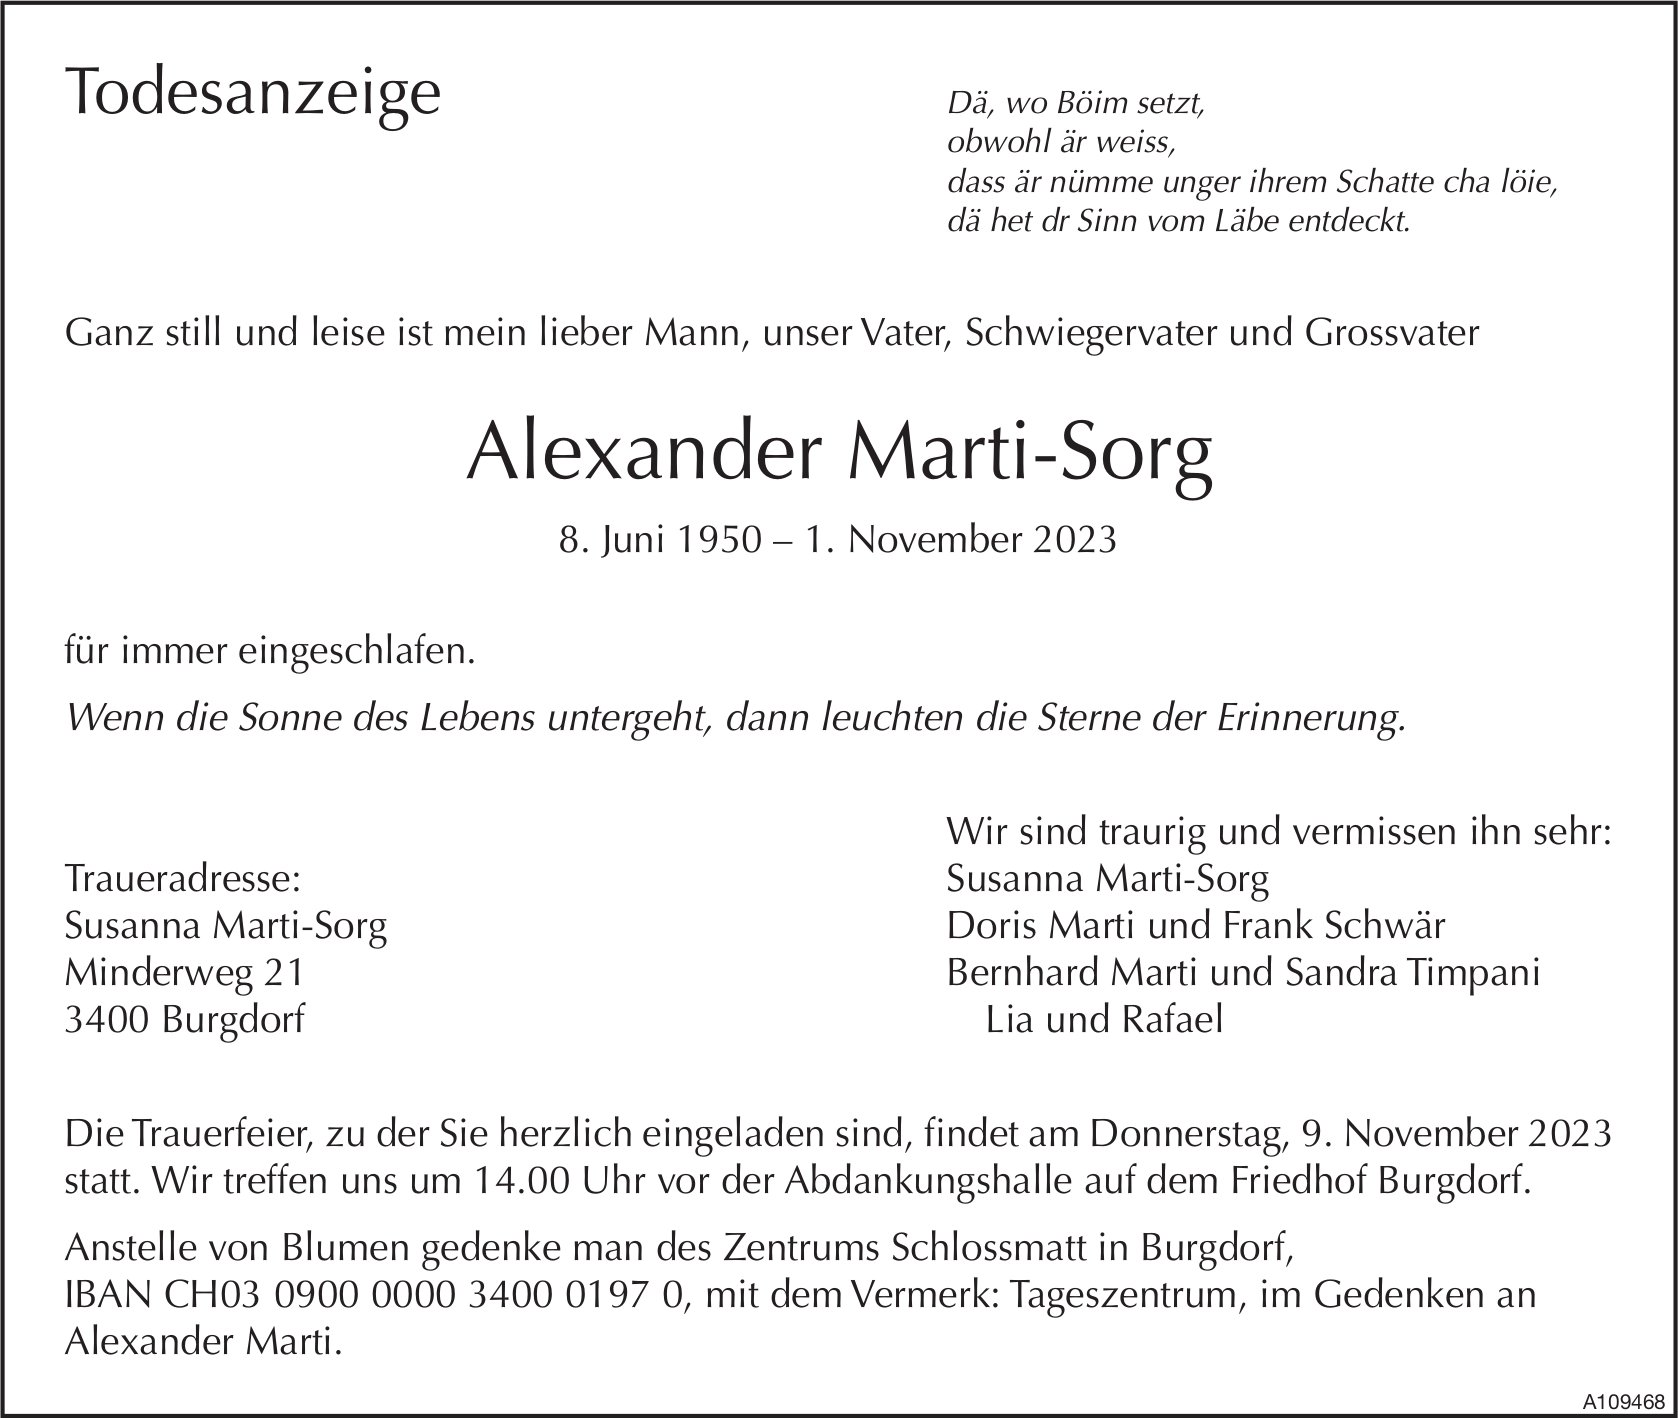 Alexander Marti-Sorg, November 2023 / TA